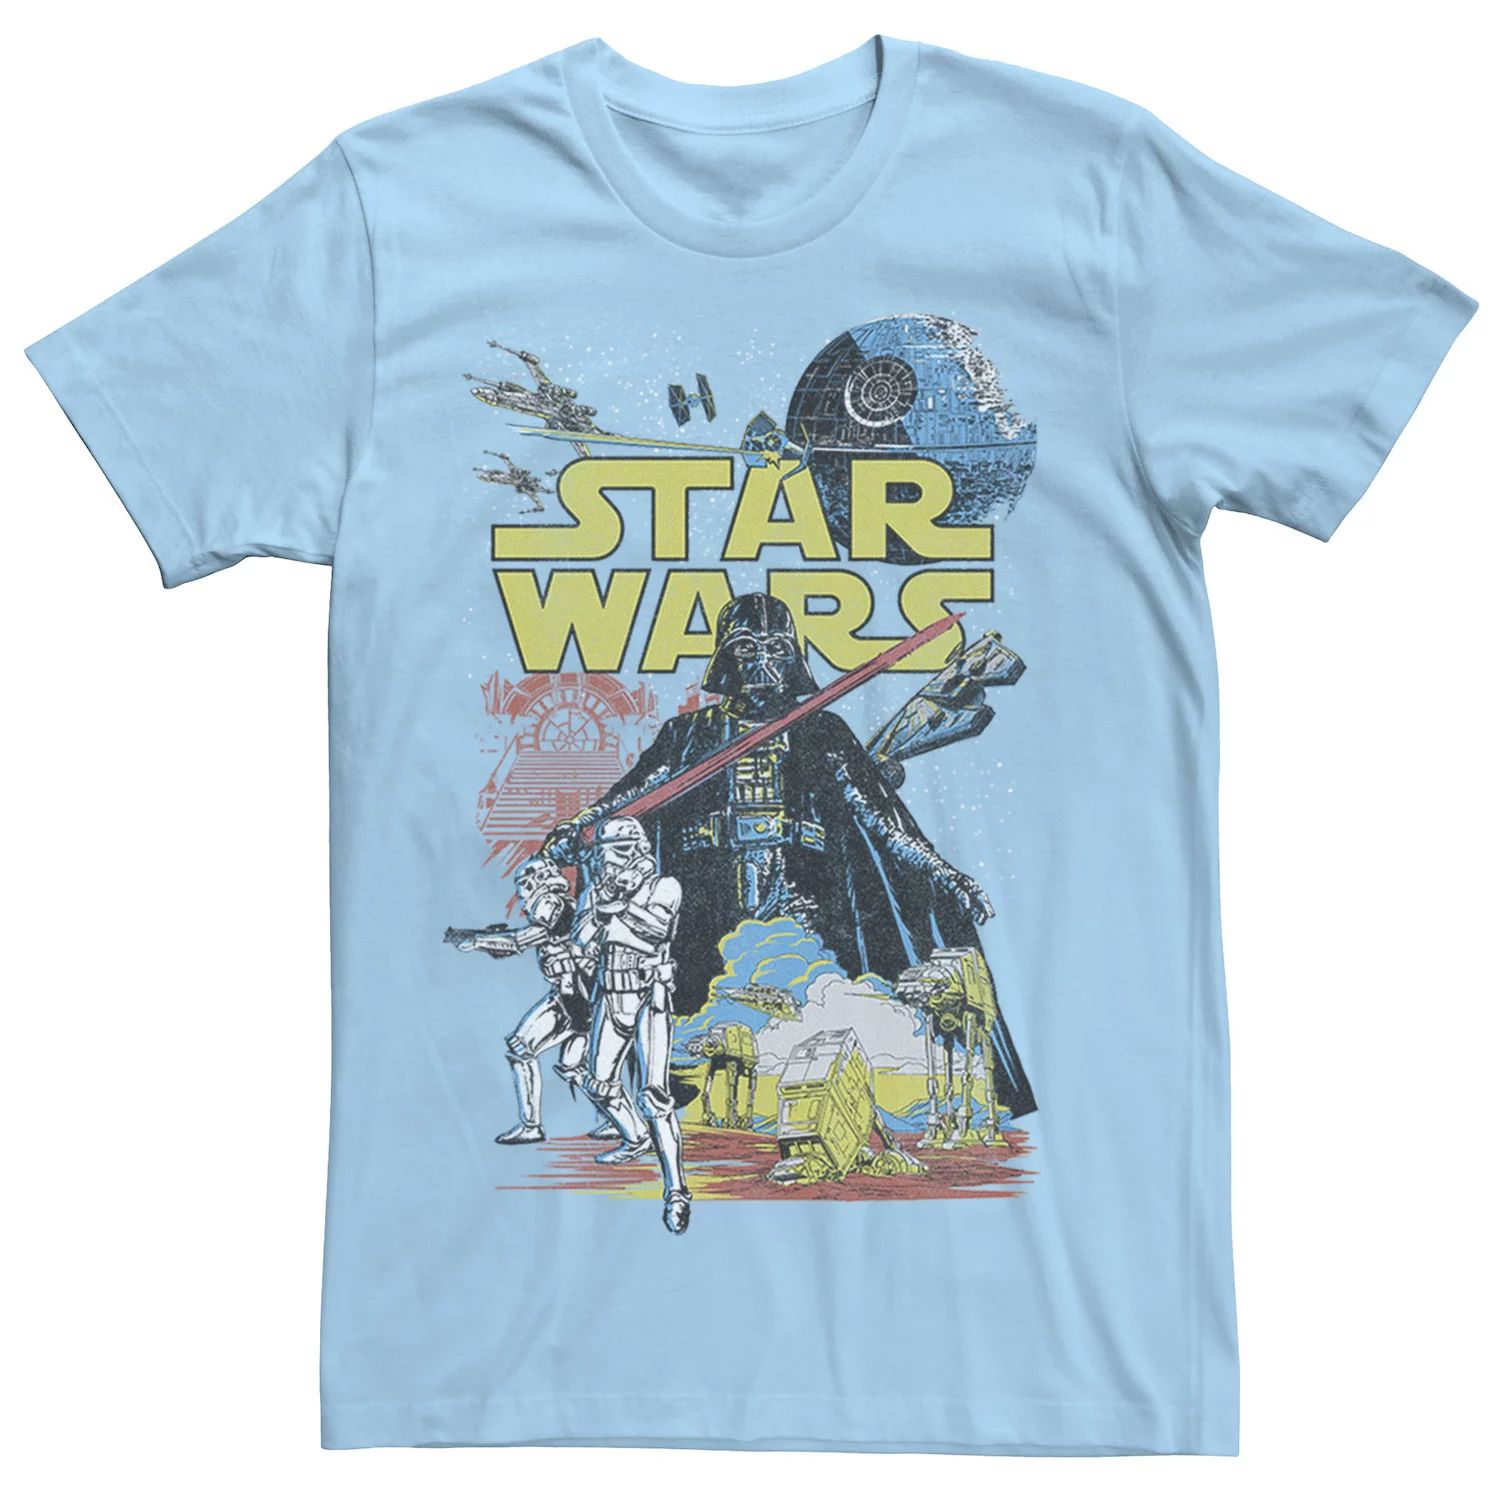 Мужская классическая футболка с графическим плакатом Rebel Star Wars, светло-синий sandokey galaxy star light